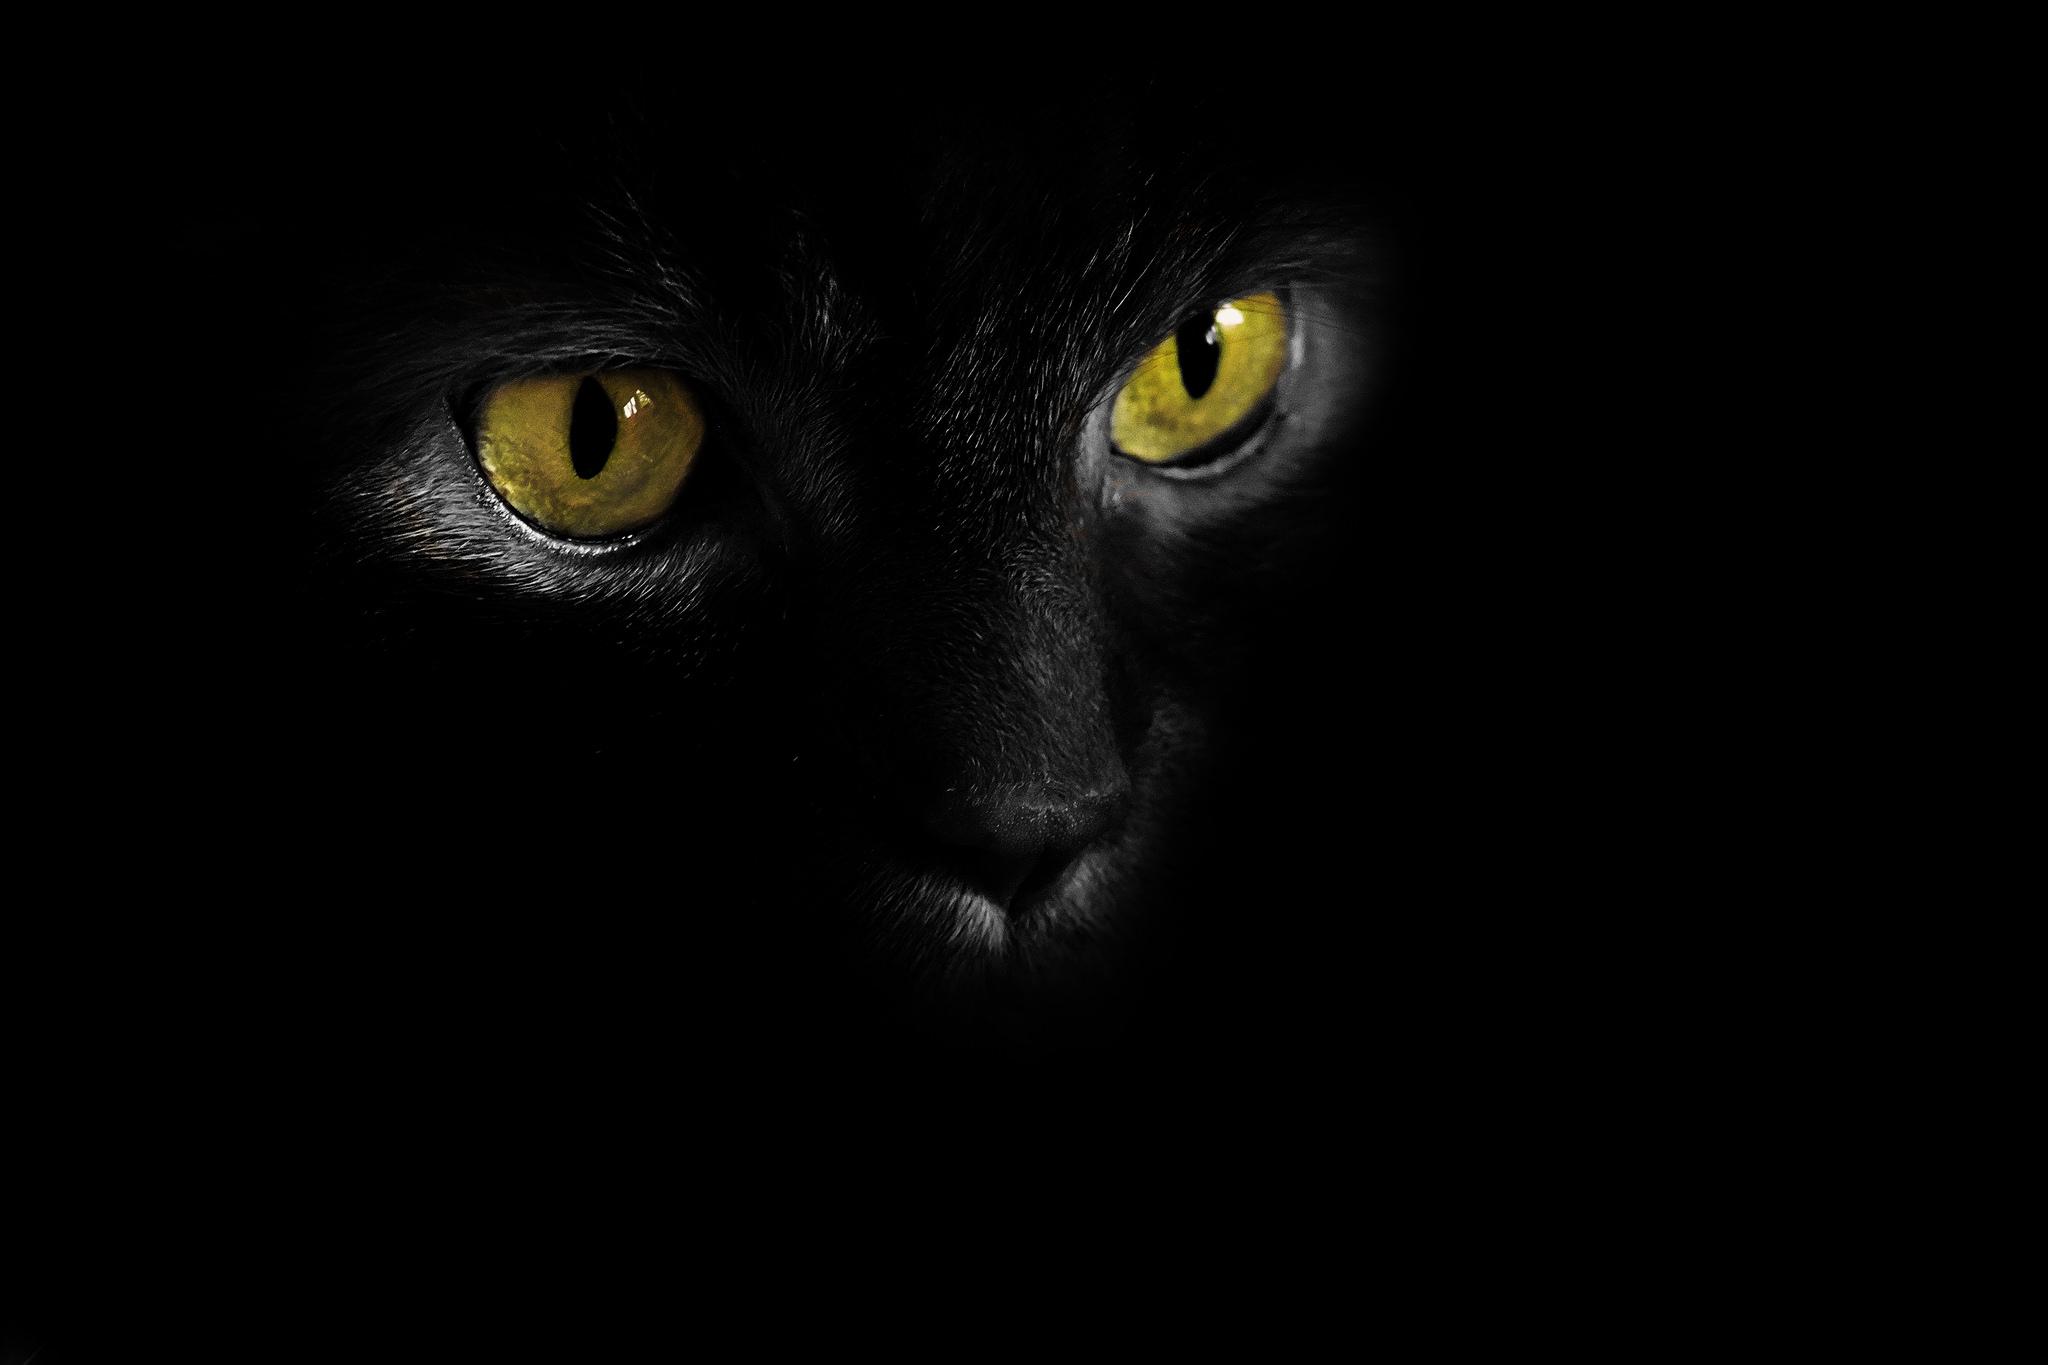 Black cat eye. Черный кот с желтыми глазами. Черная кошка на черном фоне. Кошачий глаз. Кошачьи глаза в темноте.